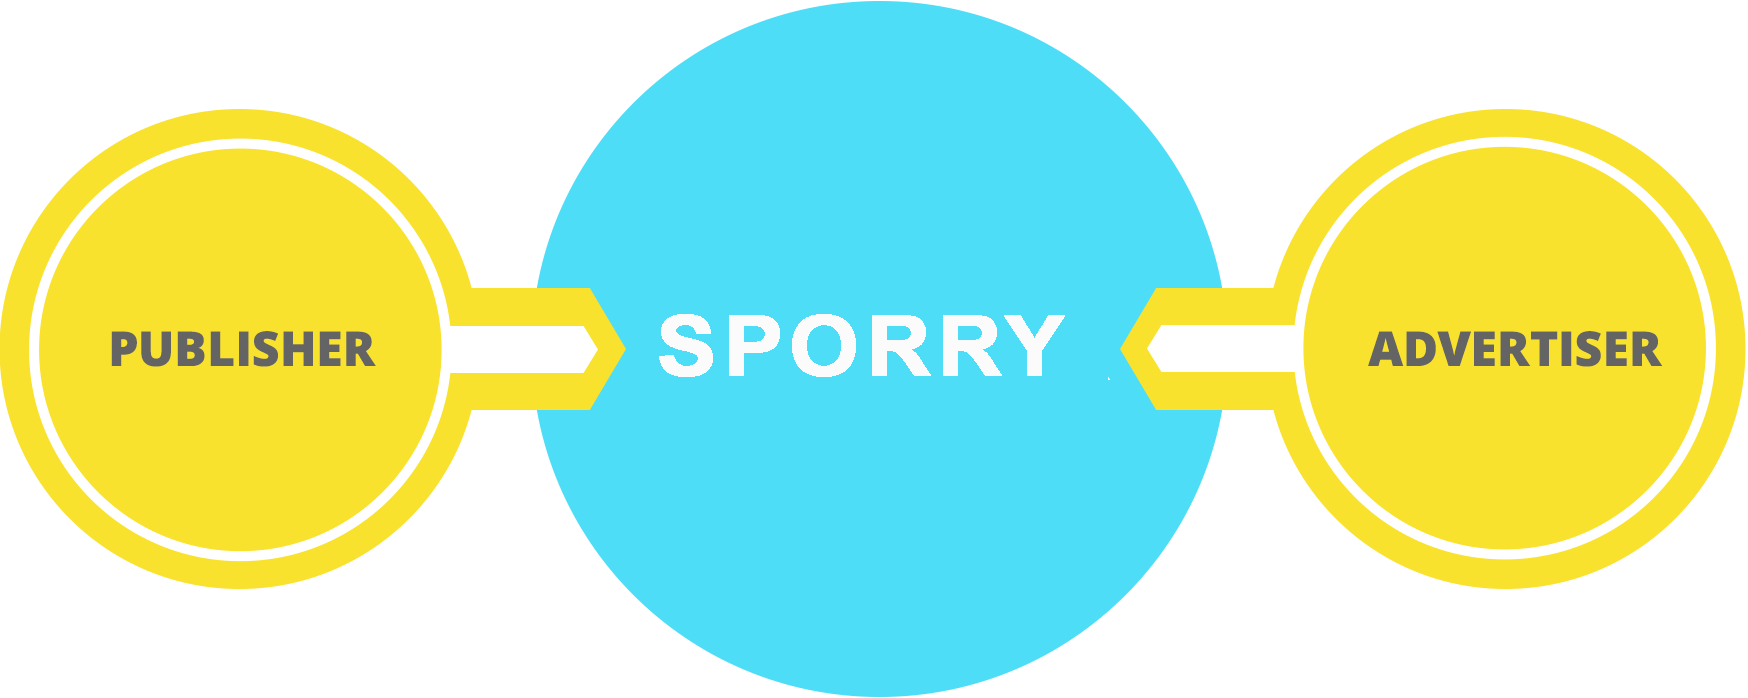 Sporry.com scheme